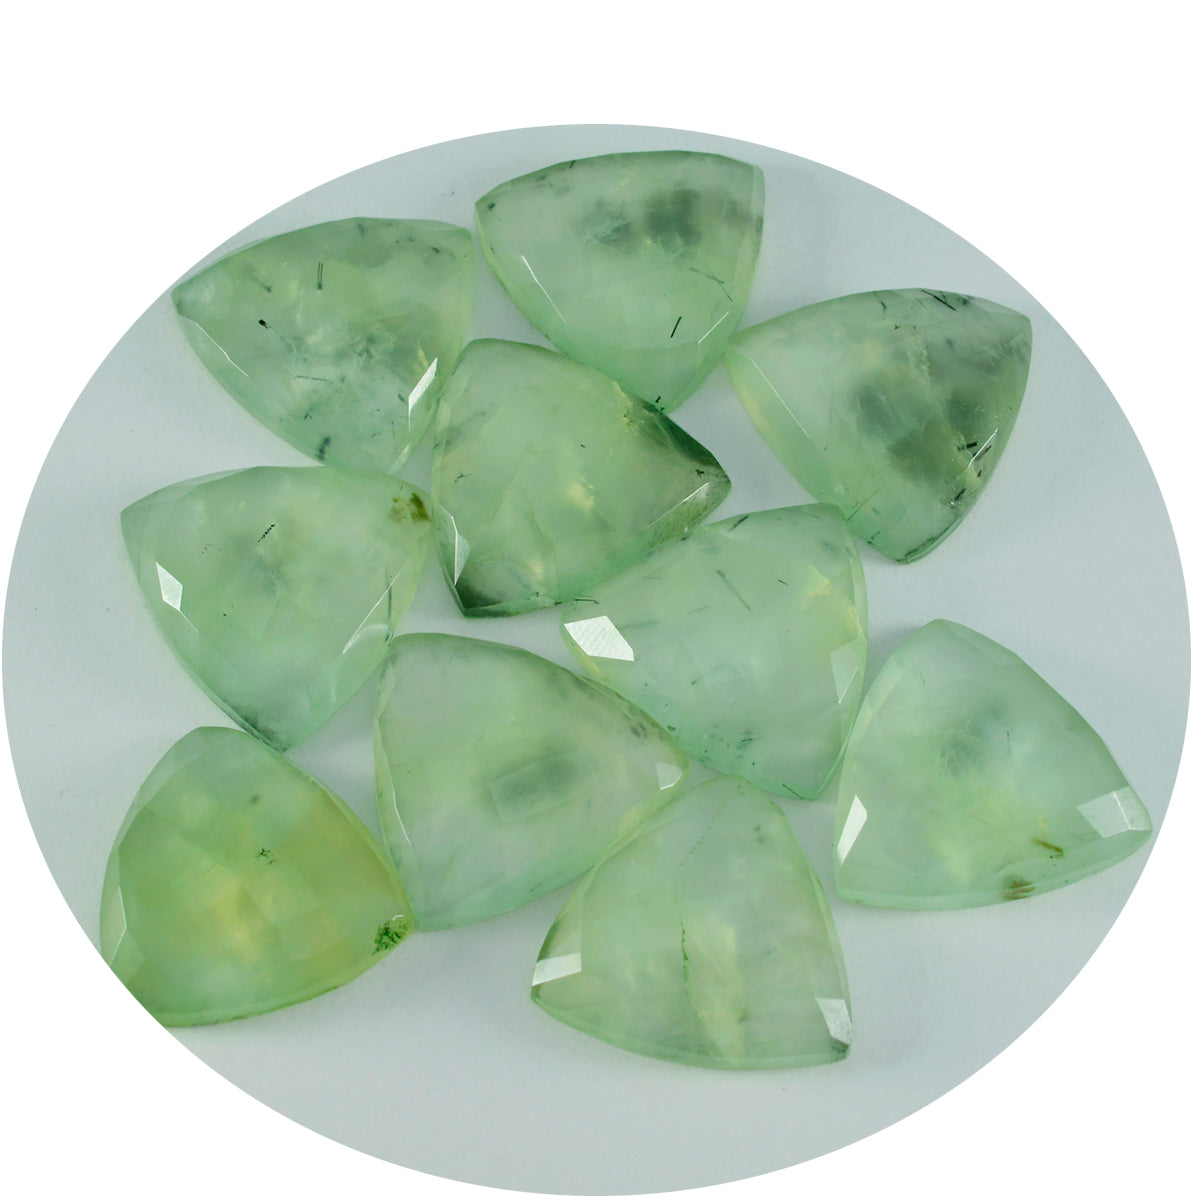 riyogems 1 шт., зеленый пренит, ограненный 11x11 мм, милый качественный драгоценный камень в форме триллиона